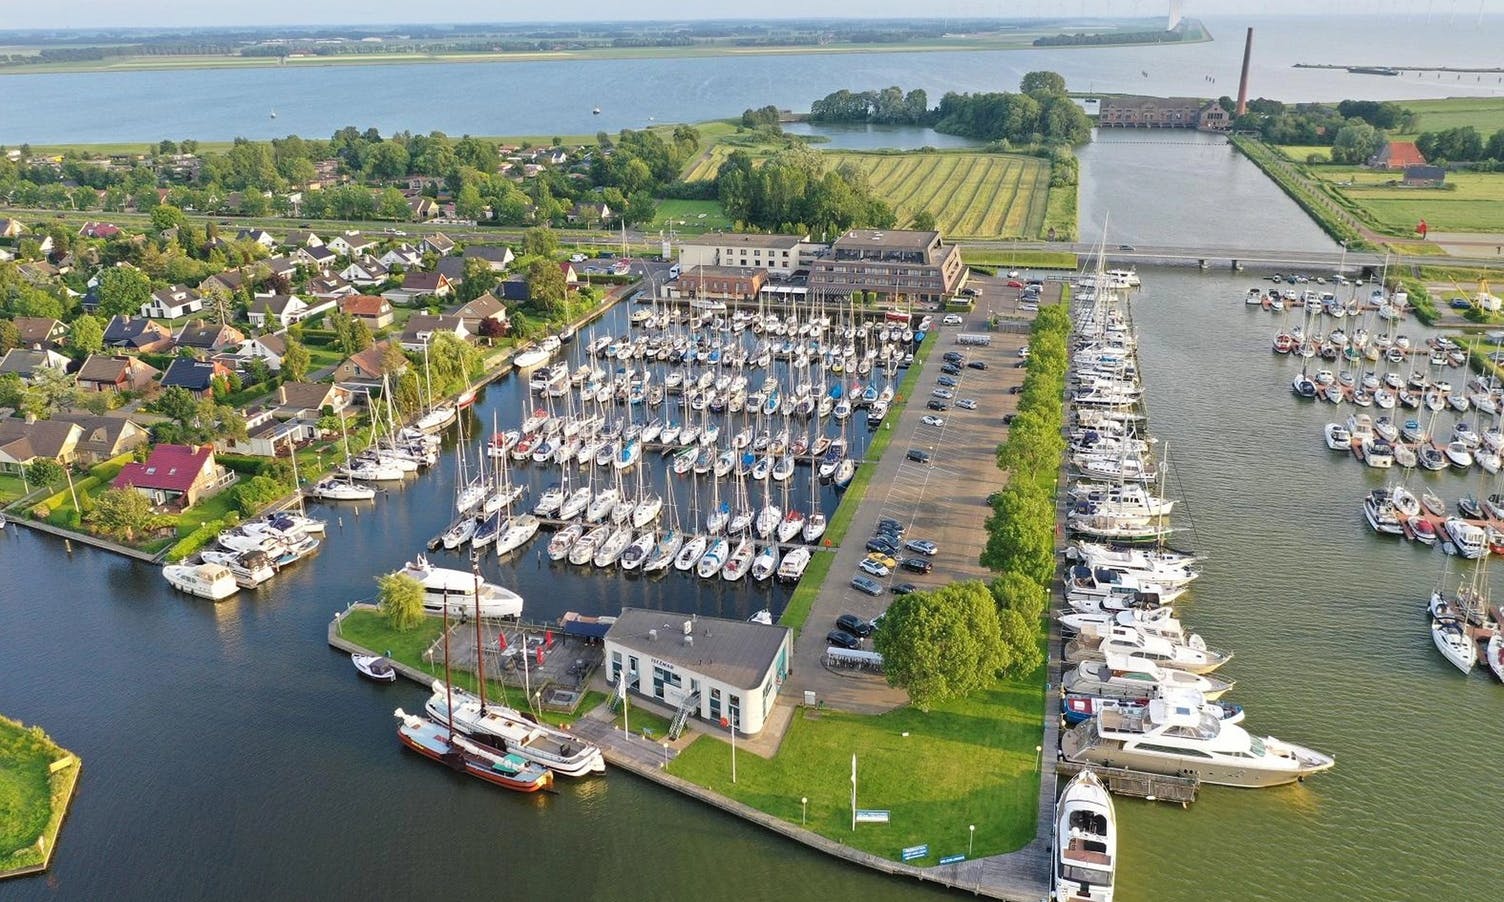 Hotellet ligg i Lemmar, ein tettstad ved sjøen, knappe 30 km frå Thialf i Heerenveen. (Foto: Iselmar Sport Hotel)